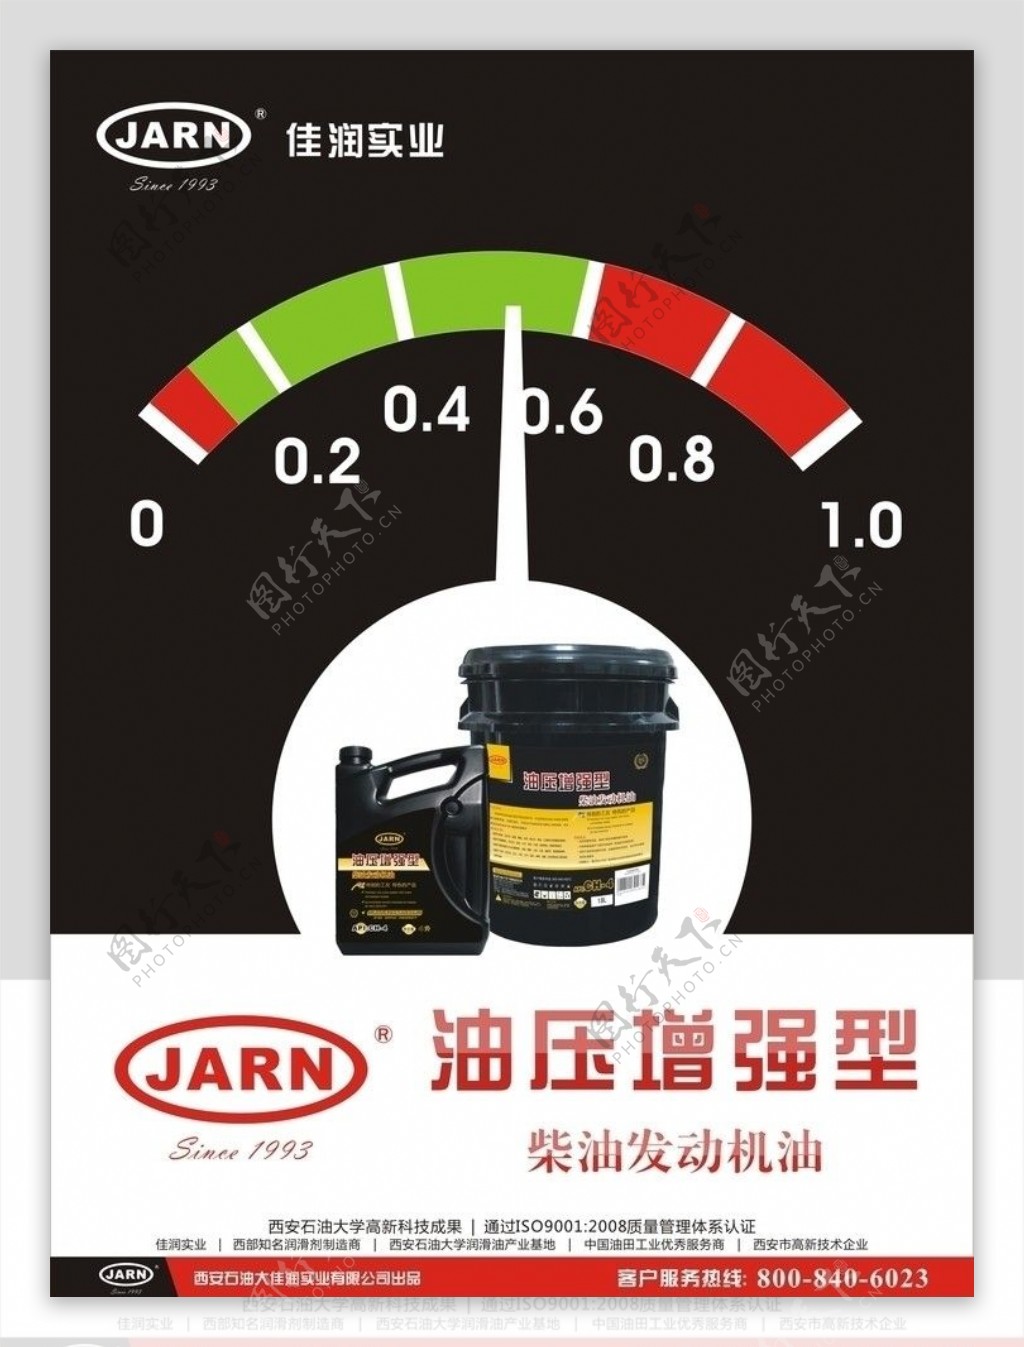 JARN油压增强型润滑油海报图片